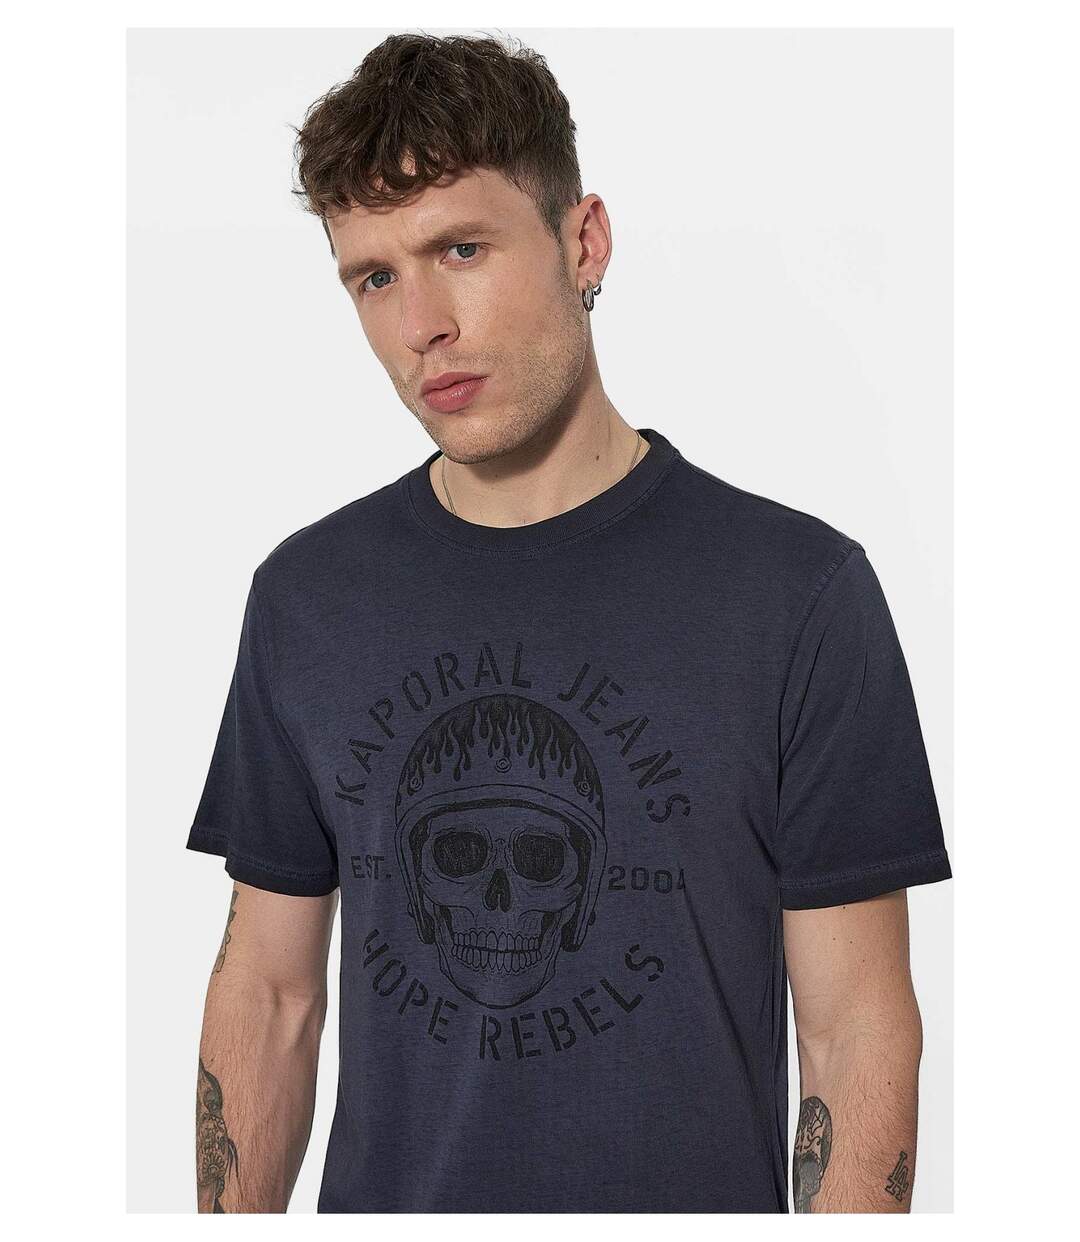 Tee shirt printé tête de mort  -  Kaporal - Homme